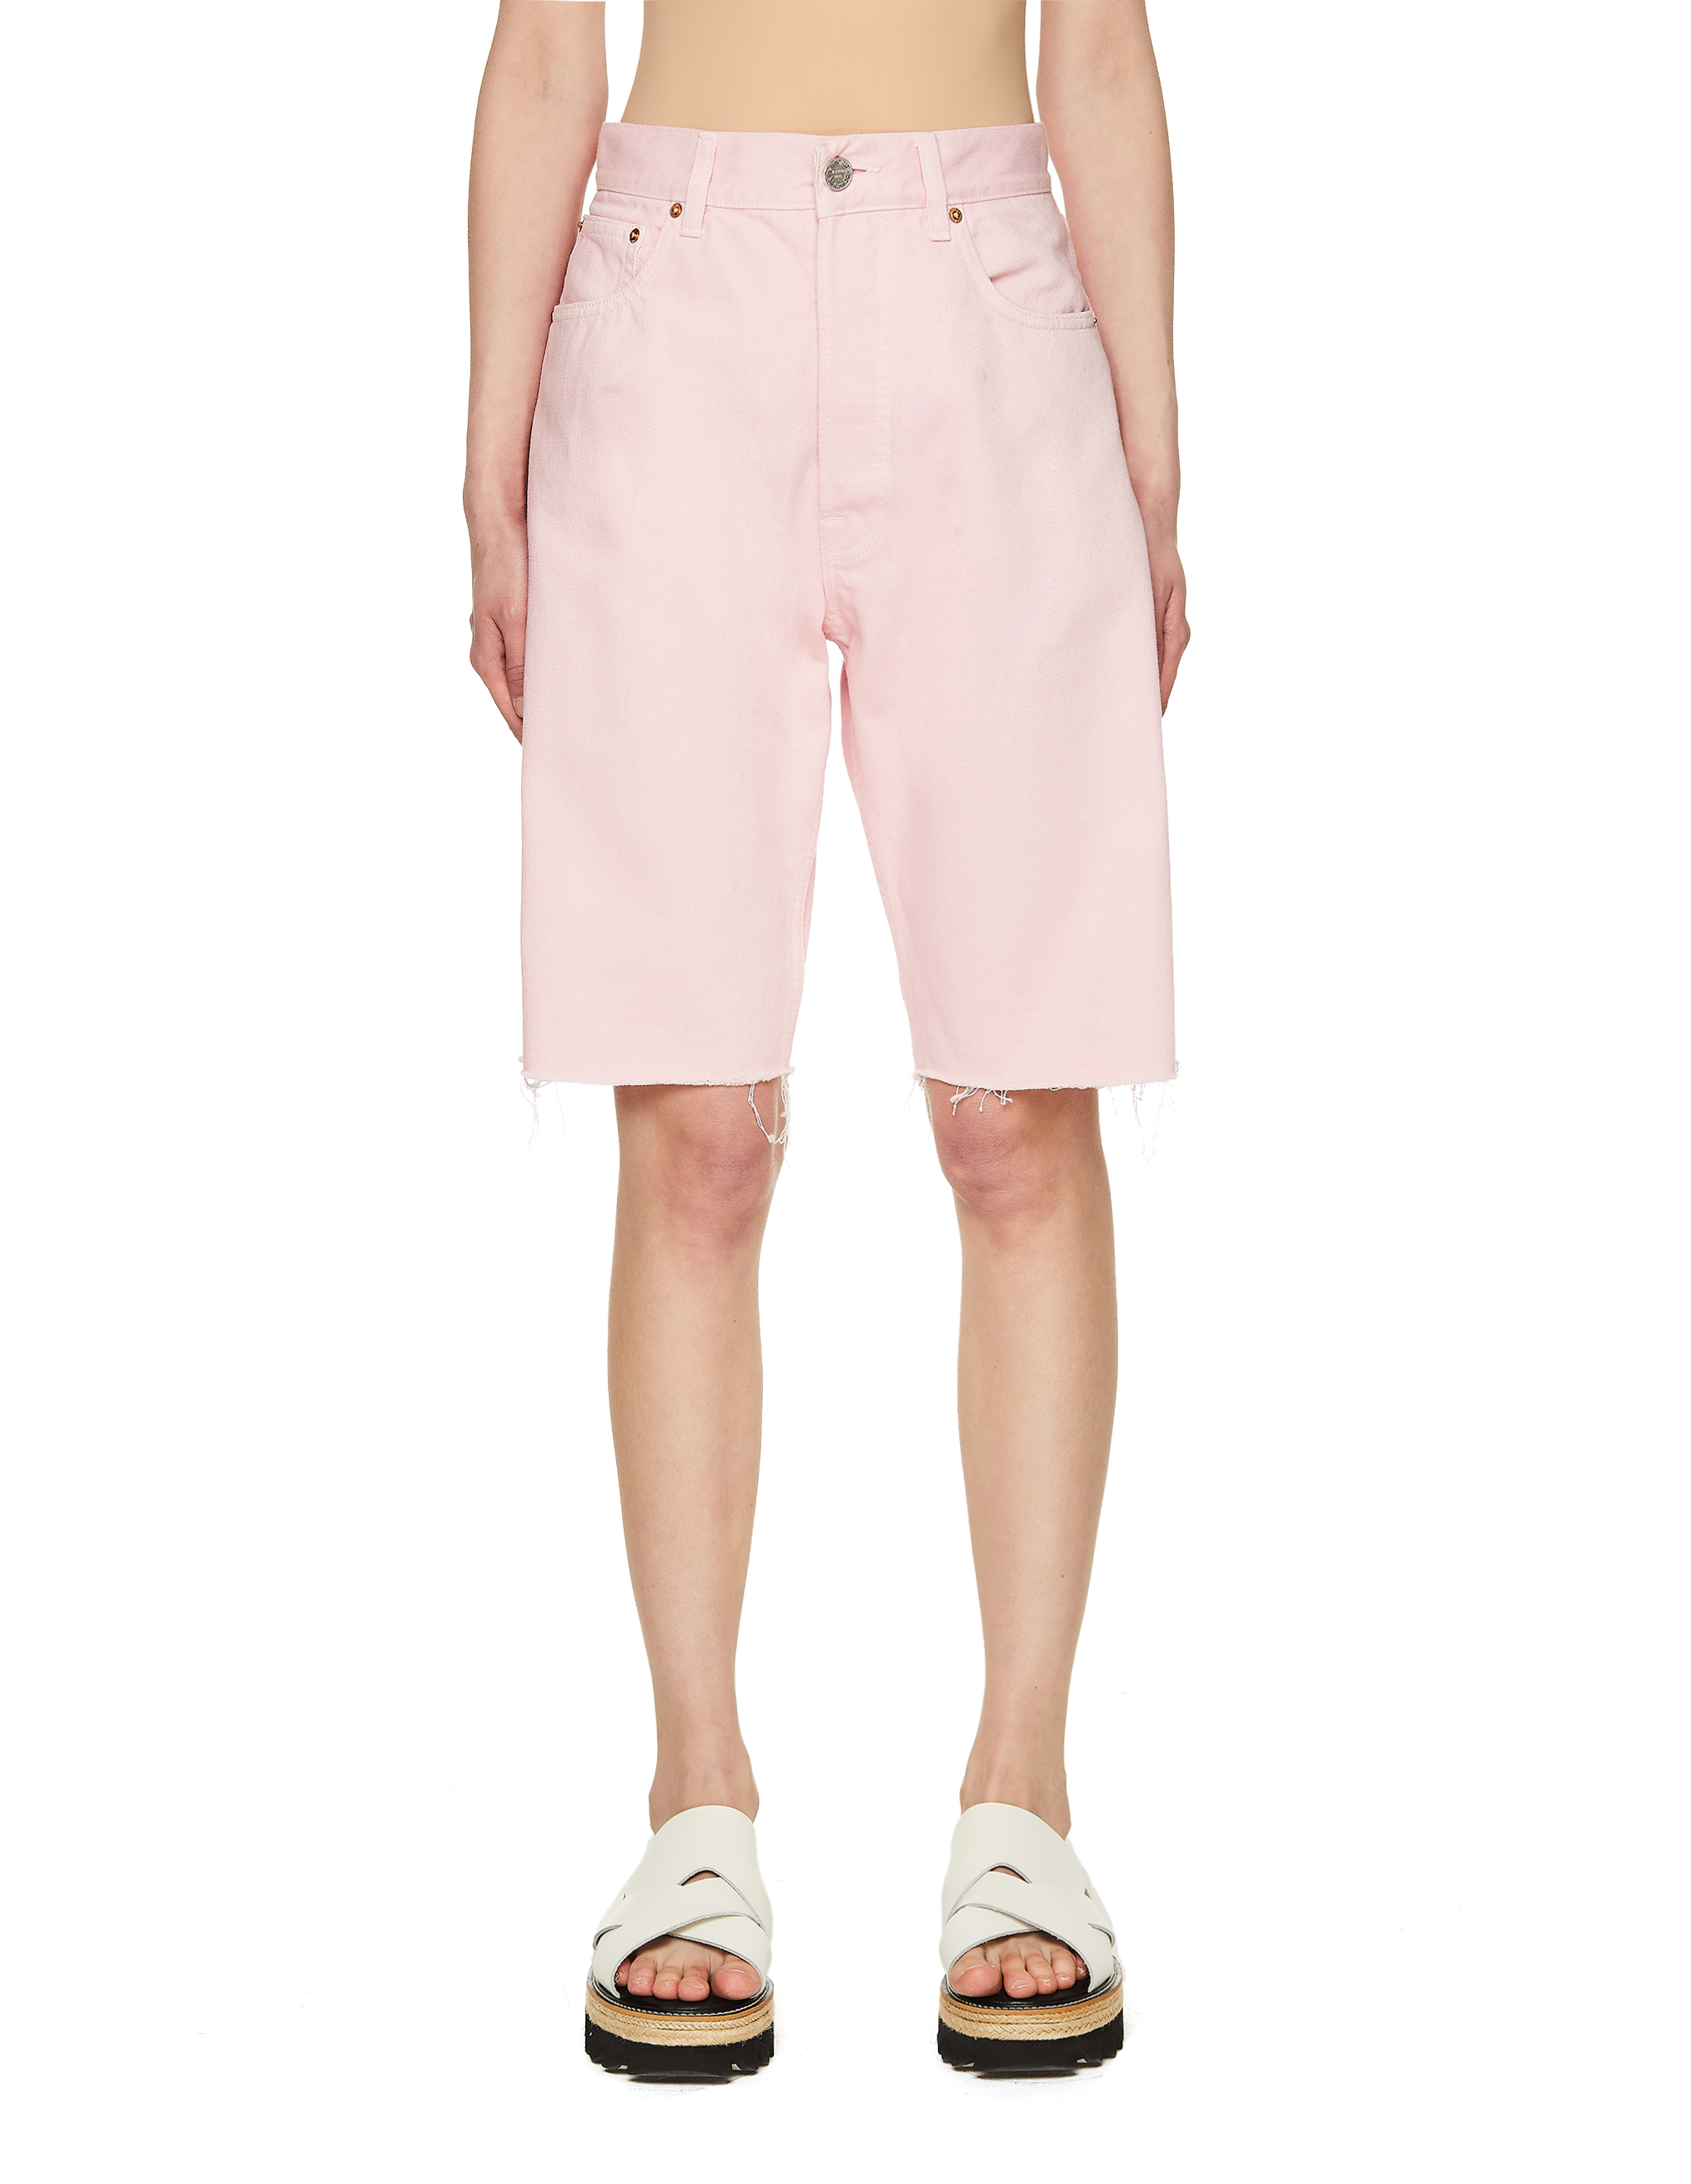 Джинсовые шорты розового цвета - Vetements ME51PA120P/2803